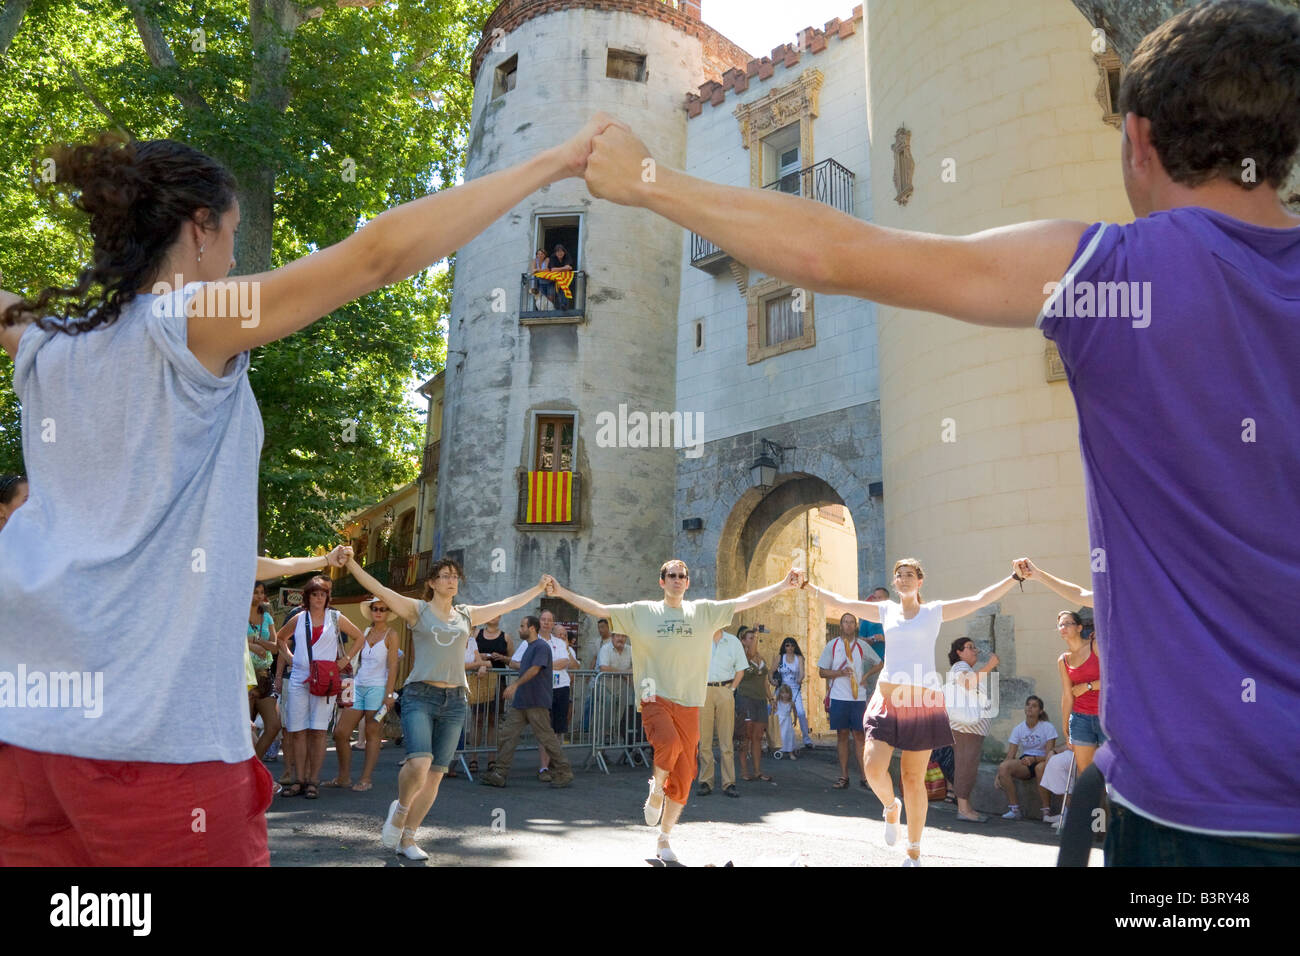 Sardana danse danseurs lors de la 51e 'Concours de Sardanes' sur la Place de la République à Céret dans le sud de la France Banque D'Images